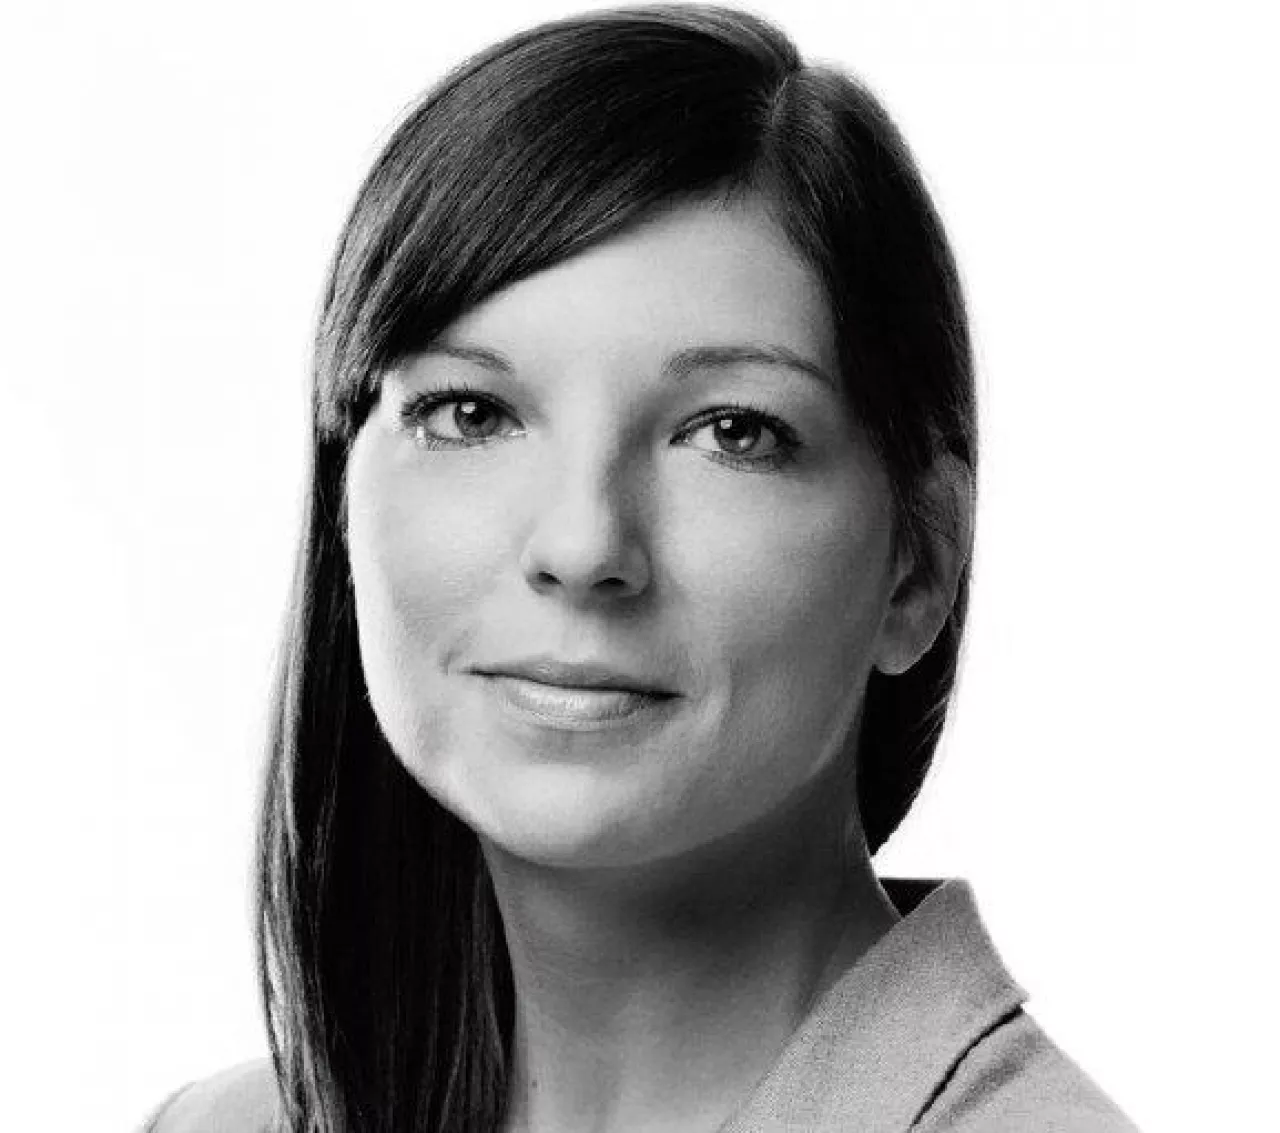 Magdalena Rzepka, dyrektor marketingu w firmie Van Pur (fot. materiały prasowe)